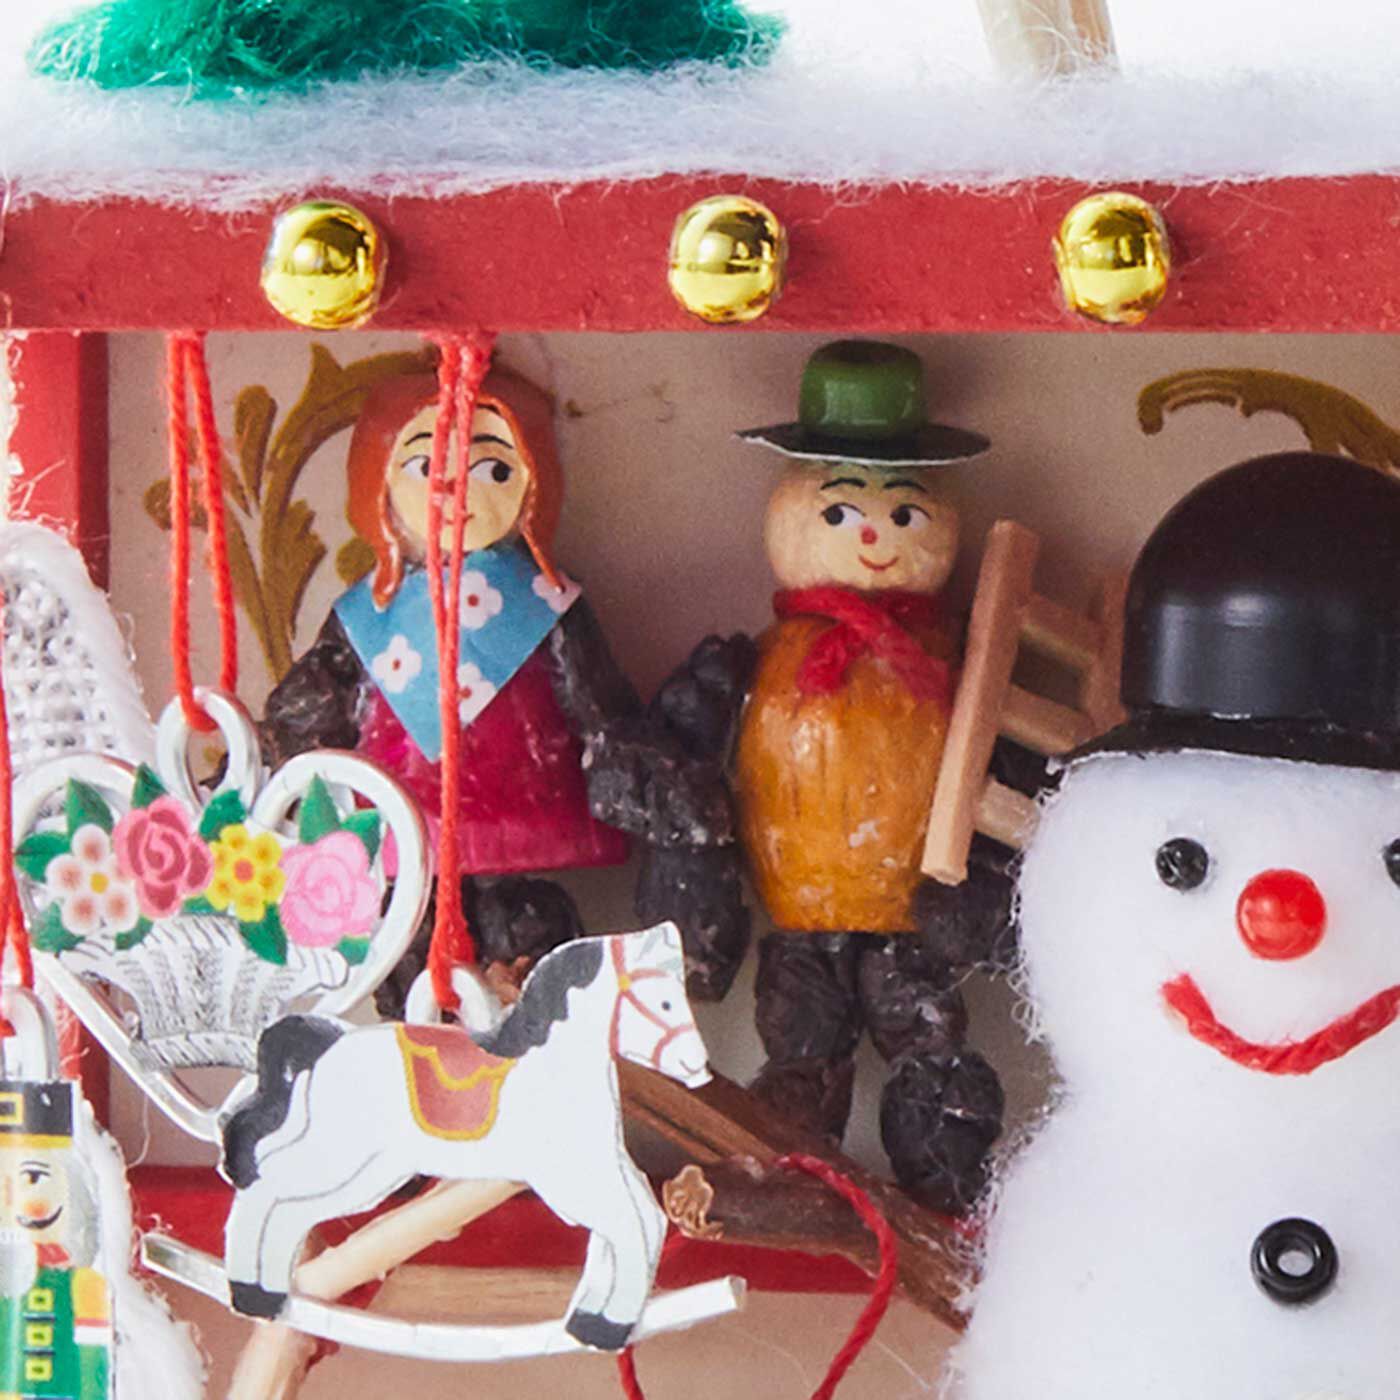 Couturier|わたしの部屋にやってきた！ ミニチュアドイツのクリスマスマーケットの会|プラム人形　壁際に並んでいるのはプラム人形。実際は、顔はクルミでからだはプラムやイチジクで手づくりされているそう。ファッションや表情もいろいろなものがあって、見ているだけでも楽しくなります。